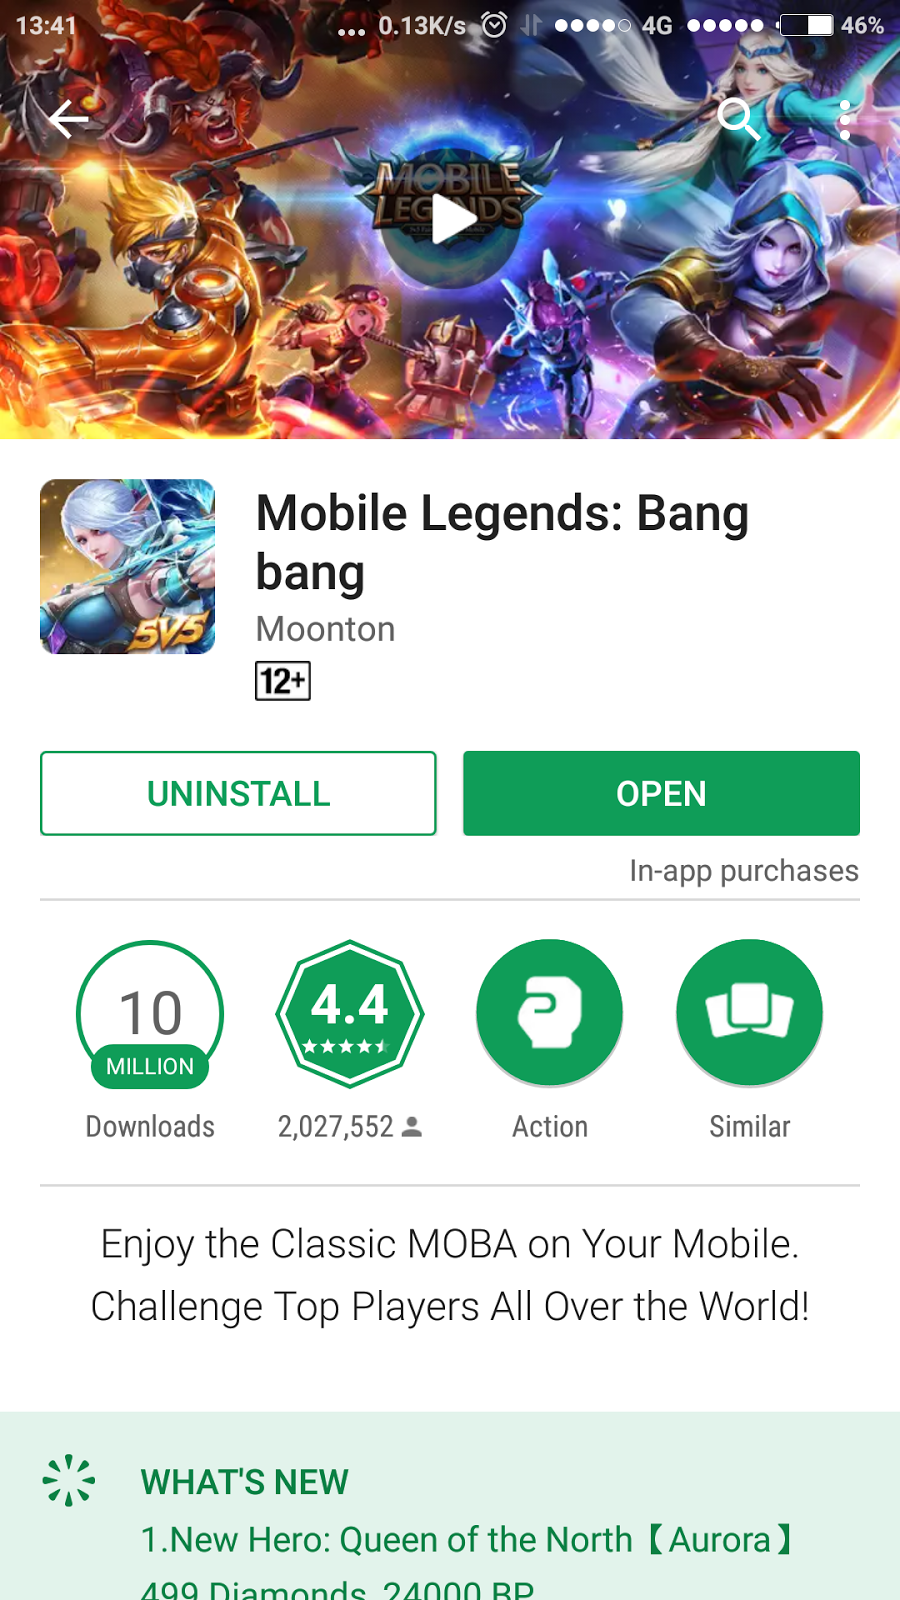 Mobile Legends Moba 5vs5